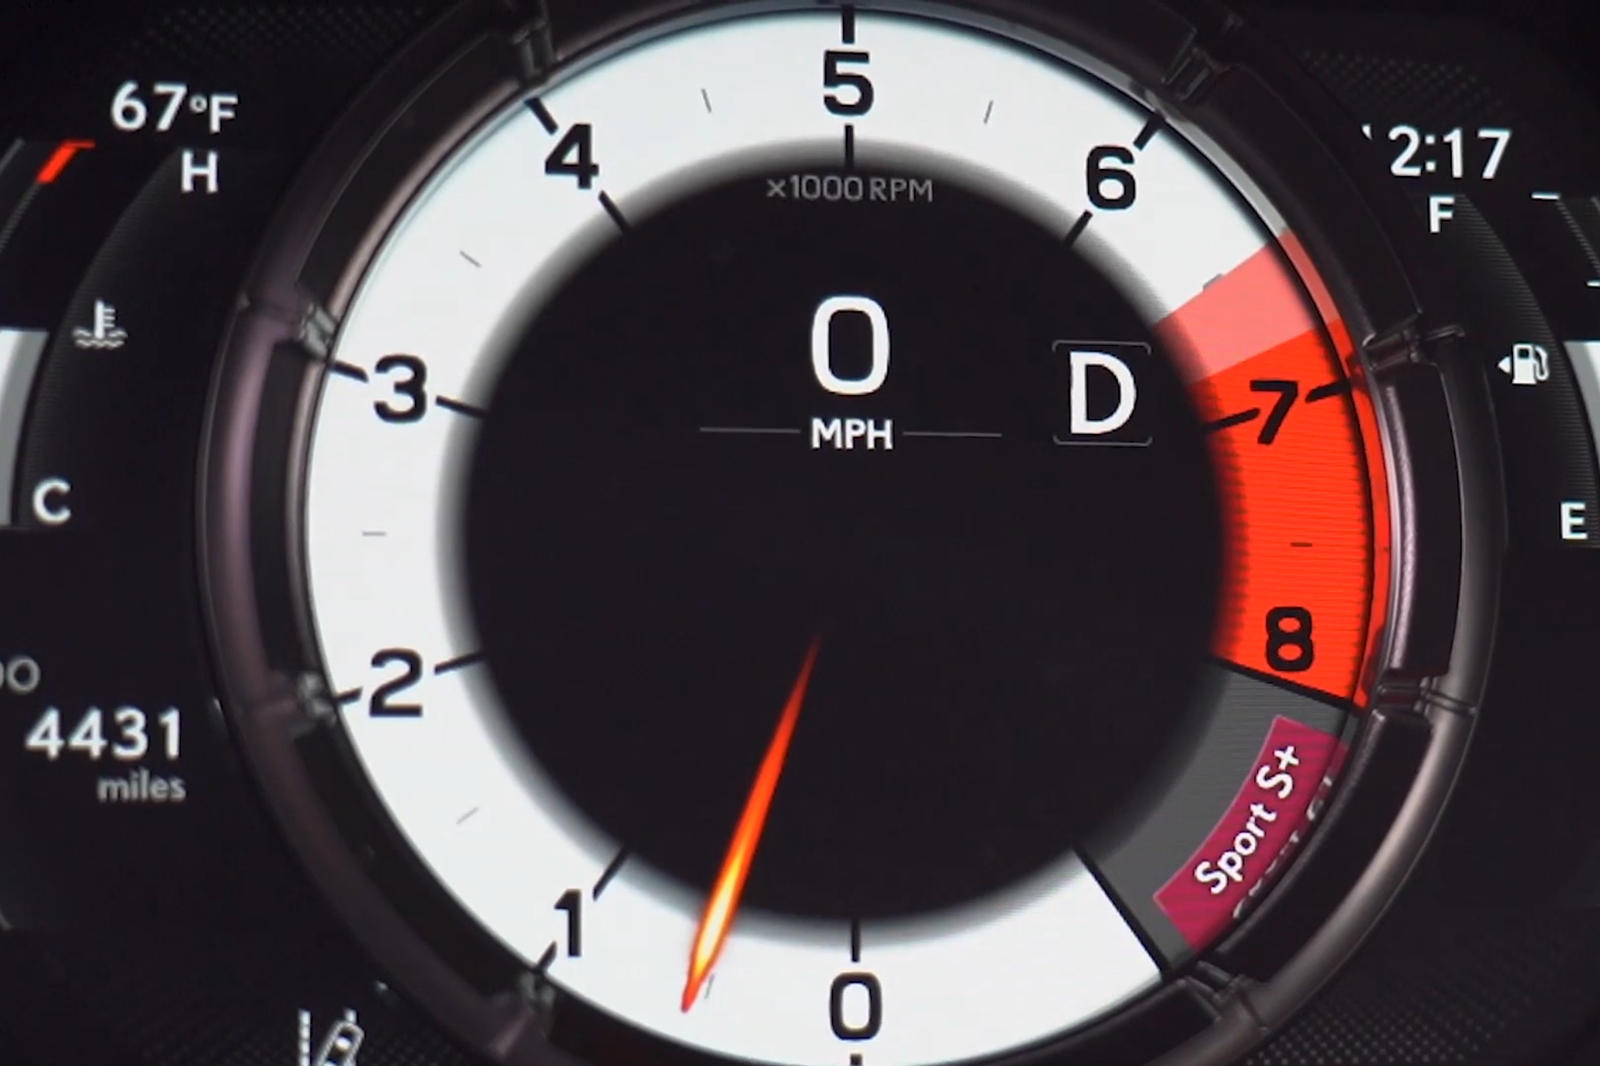 "بالفيديو" سائق فورمولا يختبر قدرات لكزس IS اف سبورت 6